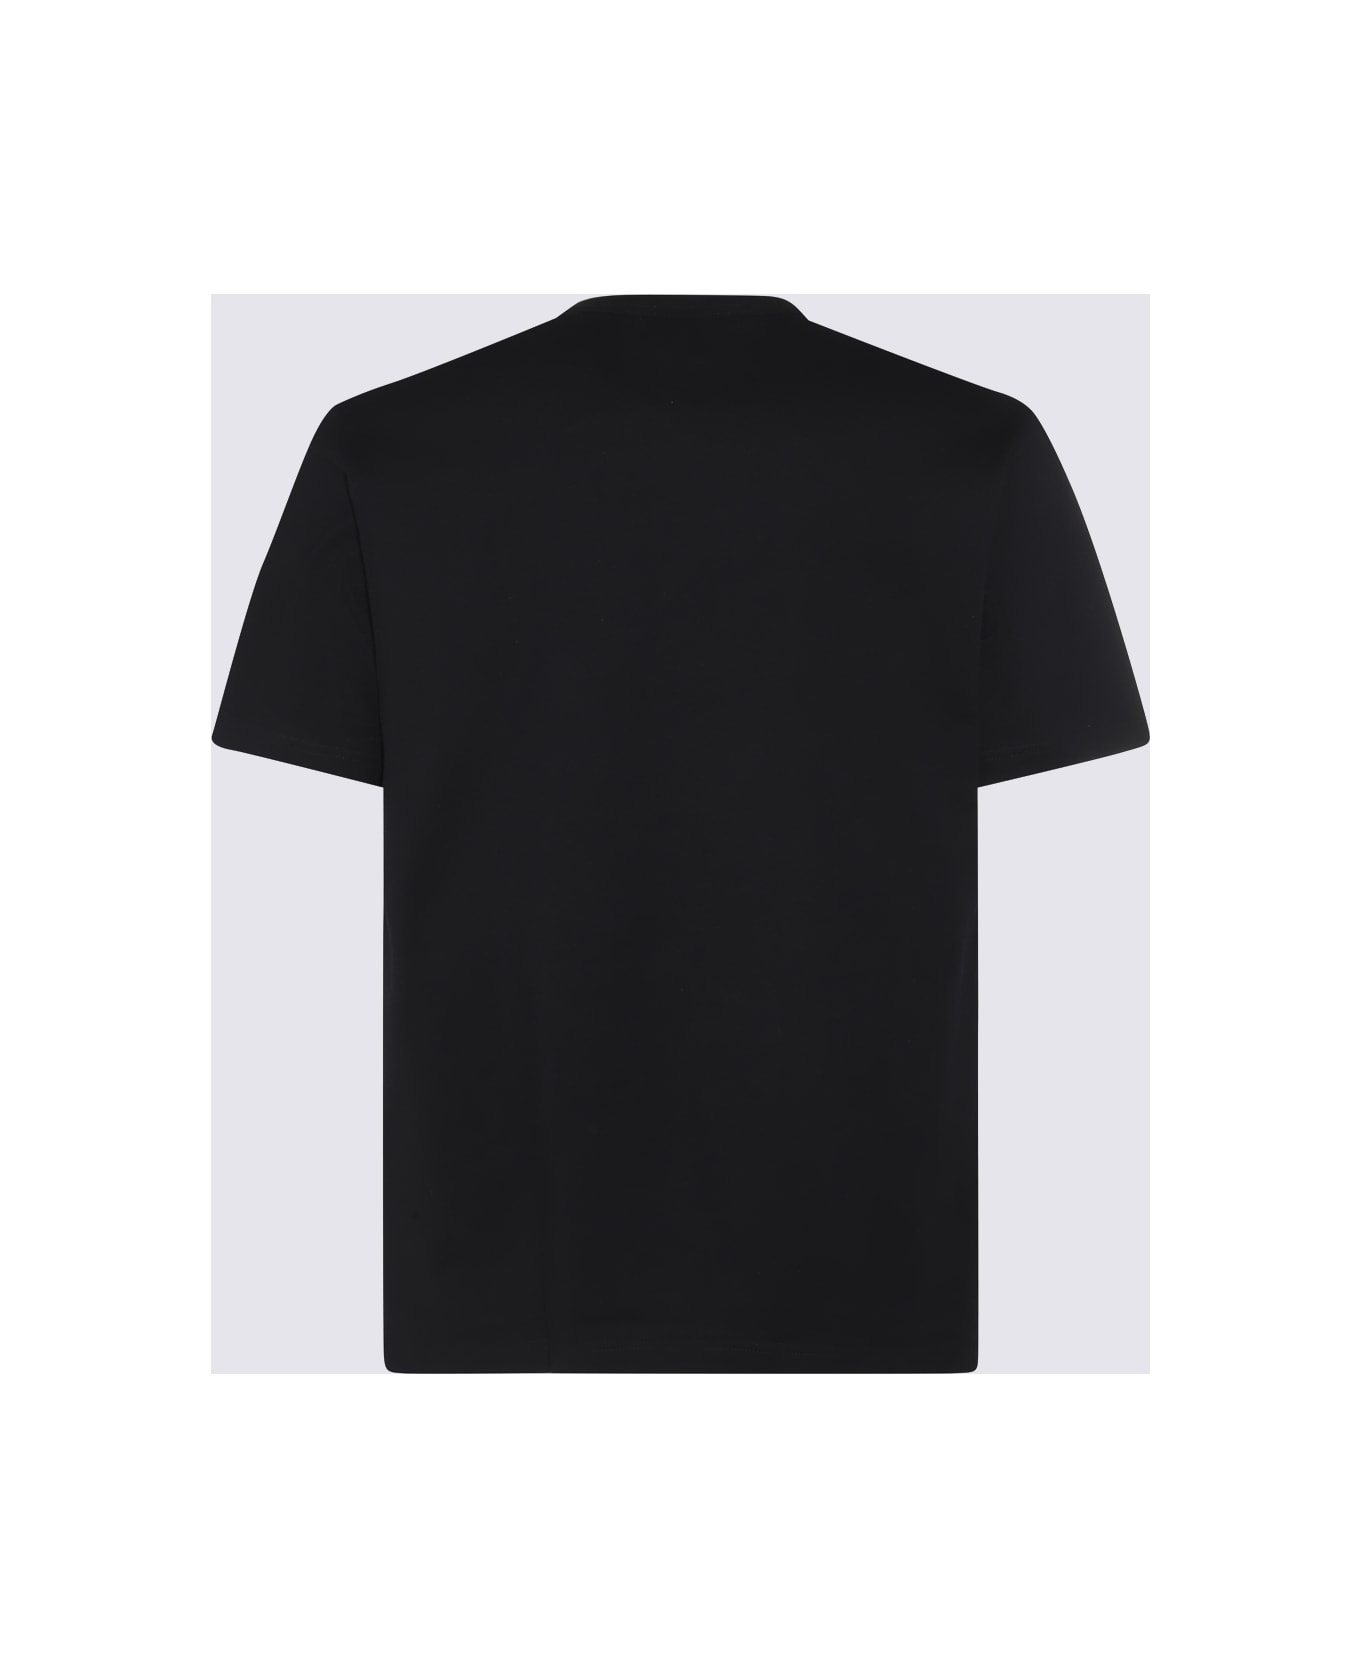 Comme des Garçons Homme Black Cotton T-shirt - Black